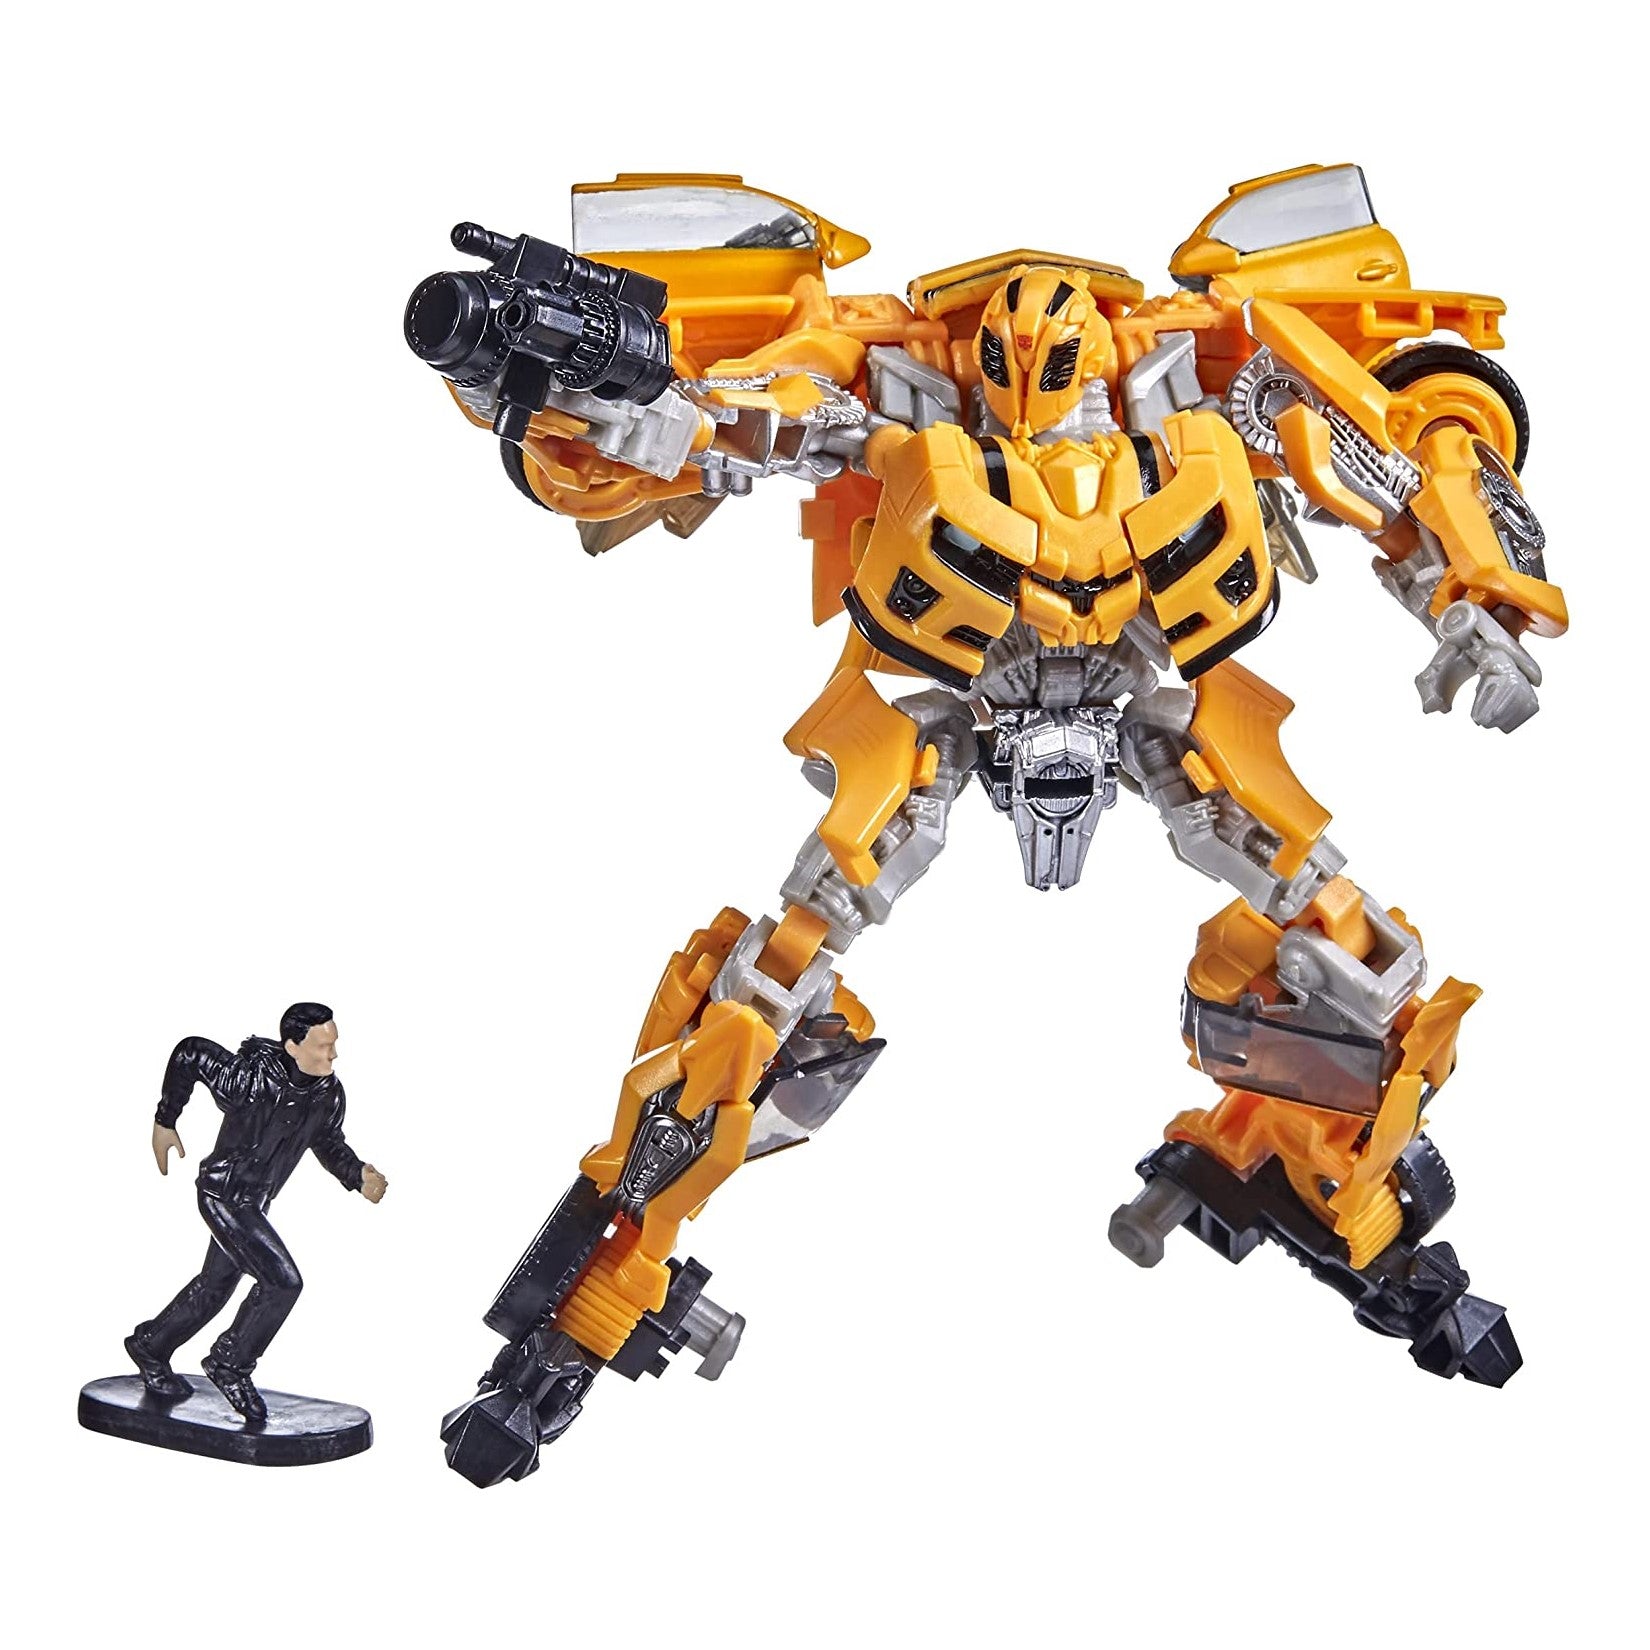 Transformers Revenge of the Fallen Deluxe Class Studio Series #74 Bumblebee - 0